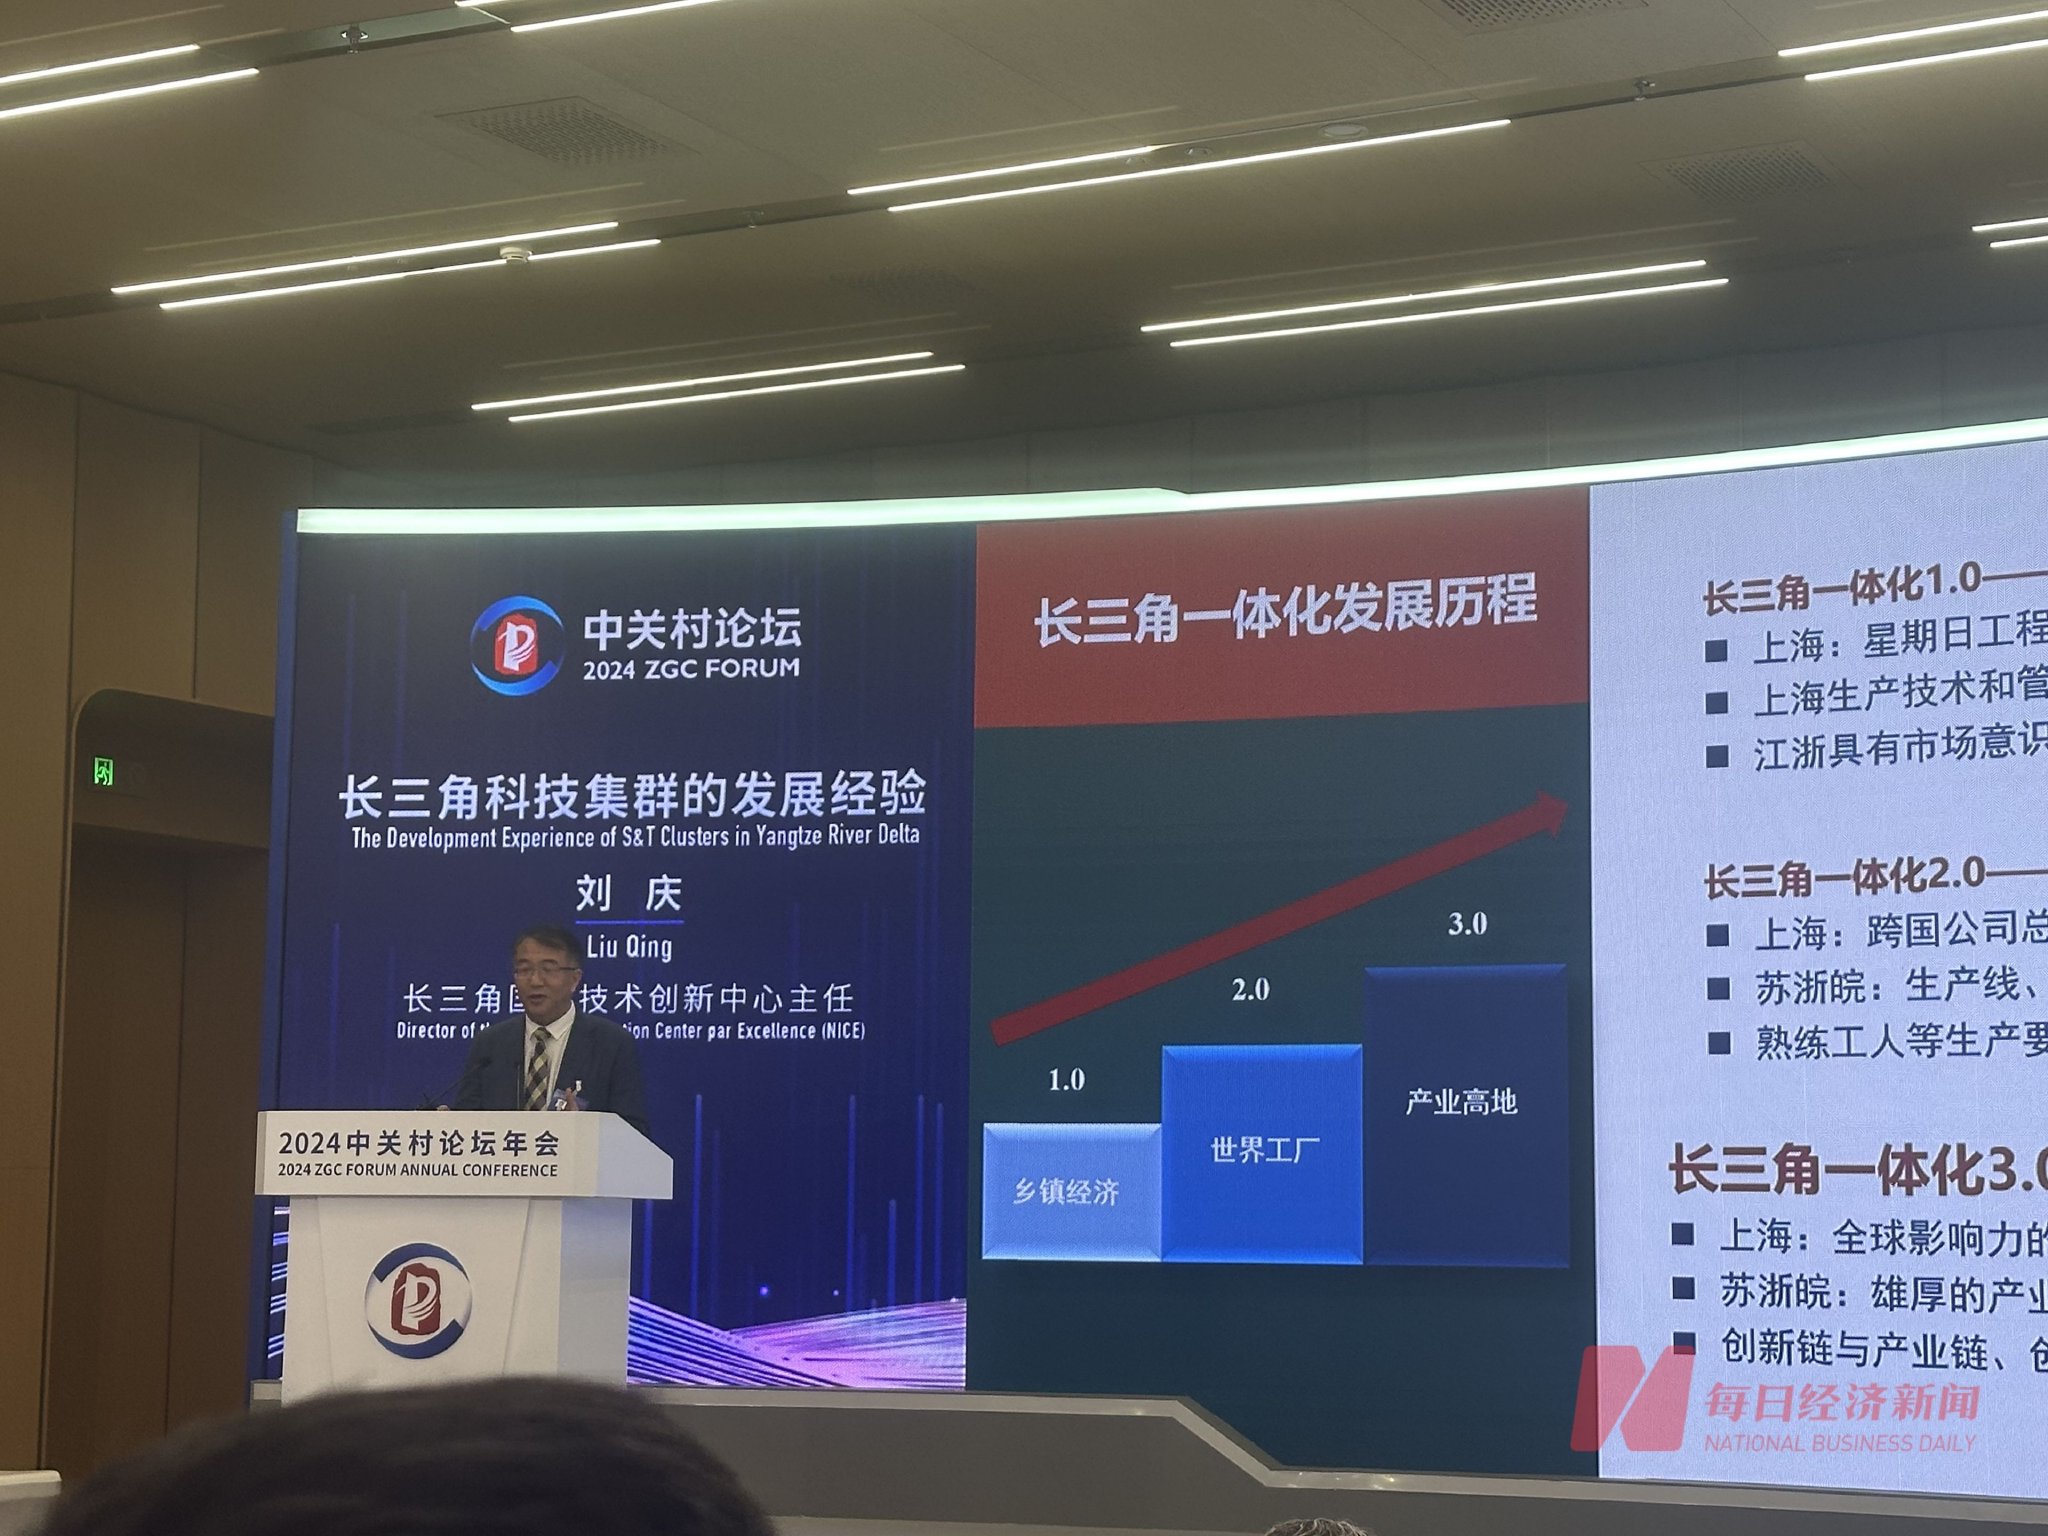 刘庆在年会平行论坛上发表主题演讲 每经记者 周逸斐 摄